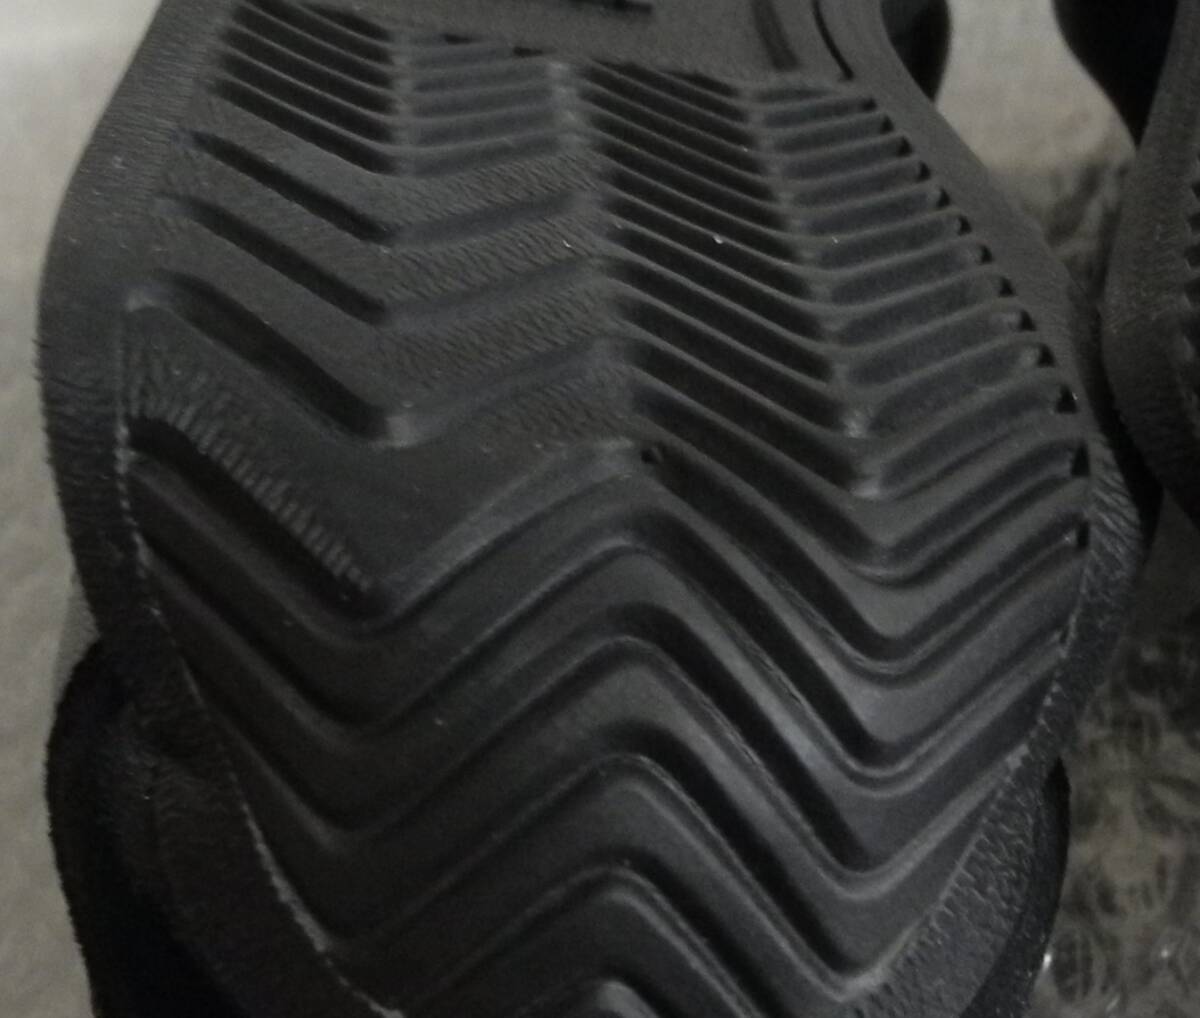 カントリー 2020年製 JP26.0cm GX2507 天然皮革 生産終了 adidas country og 黒 トリプルブラック オールブラック 本革の画像10